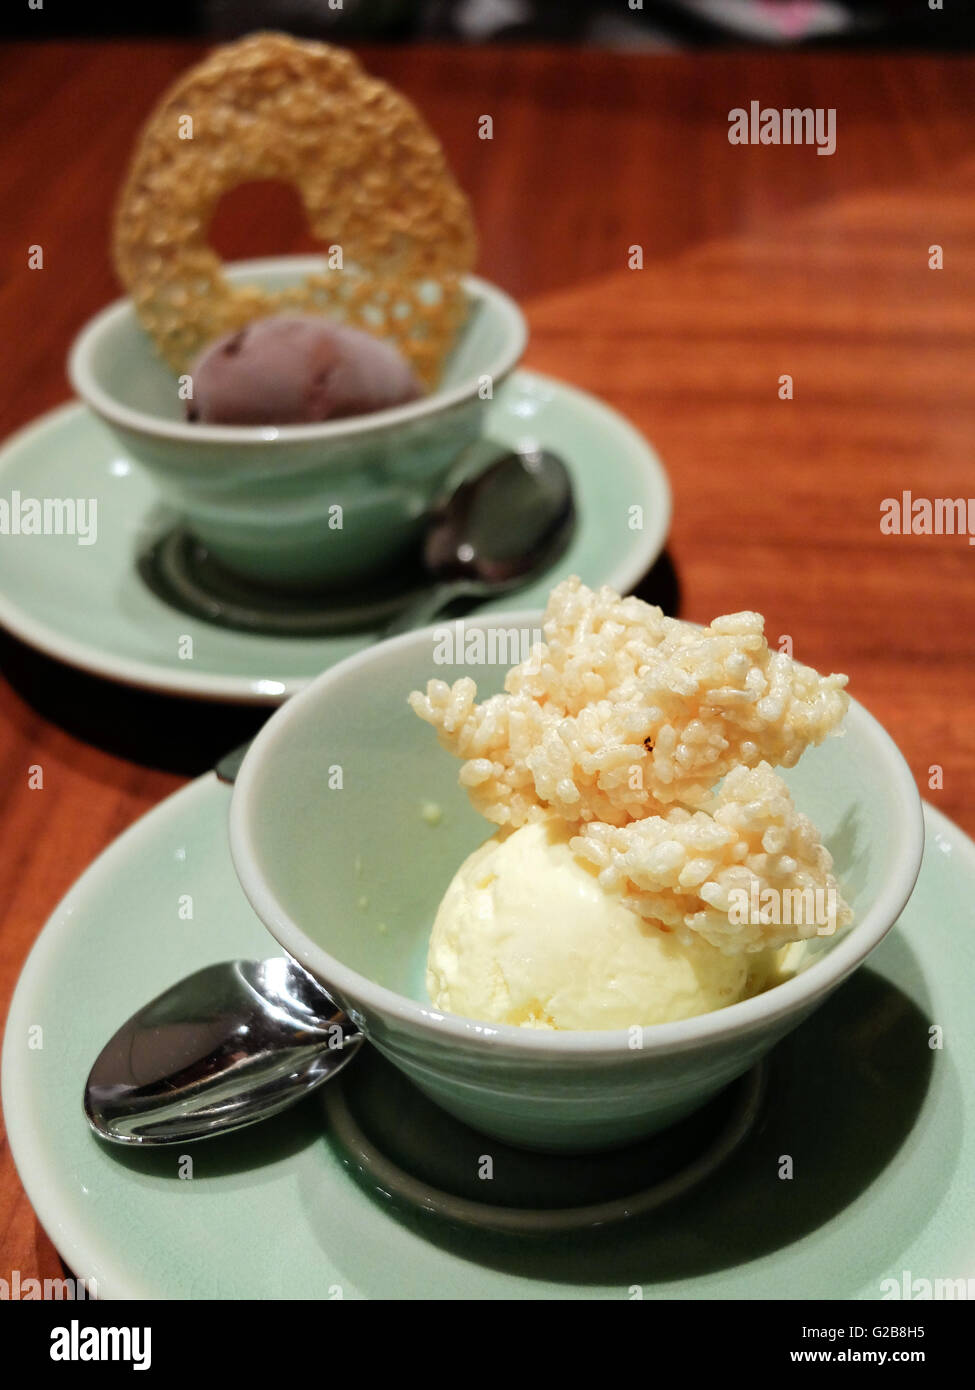 La antigua china arroz helado de vainilla de postre dulce sabor delicioso de cena fría azúcar hielo Foto de stock